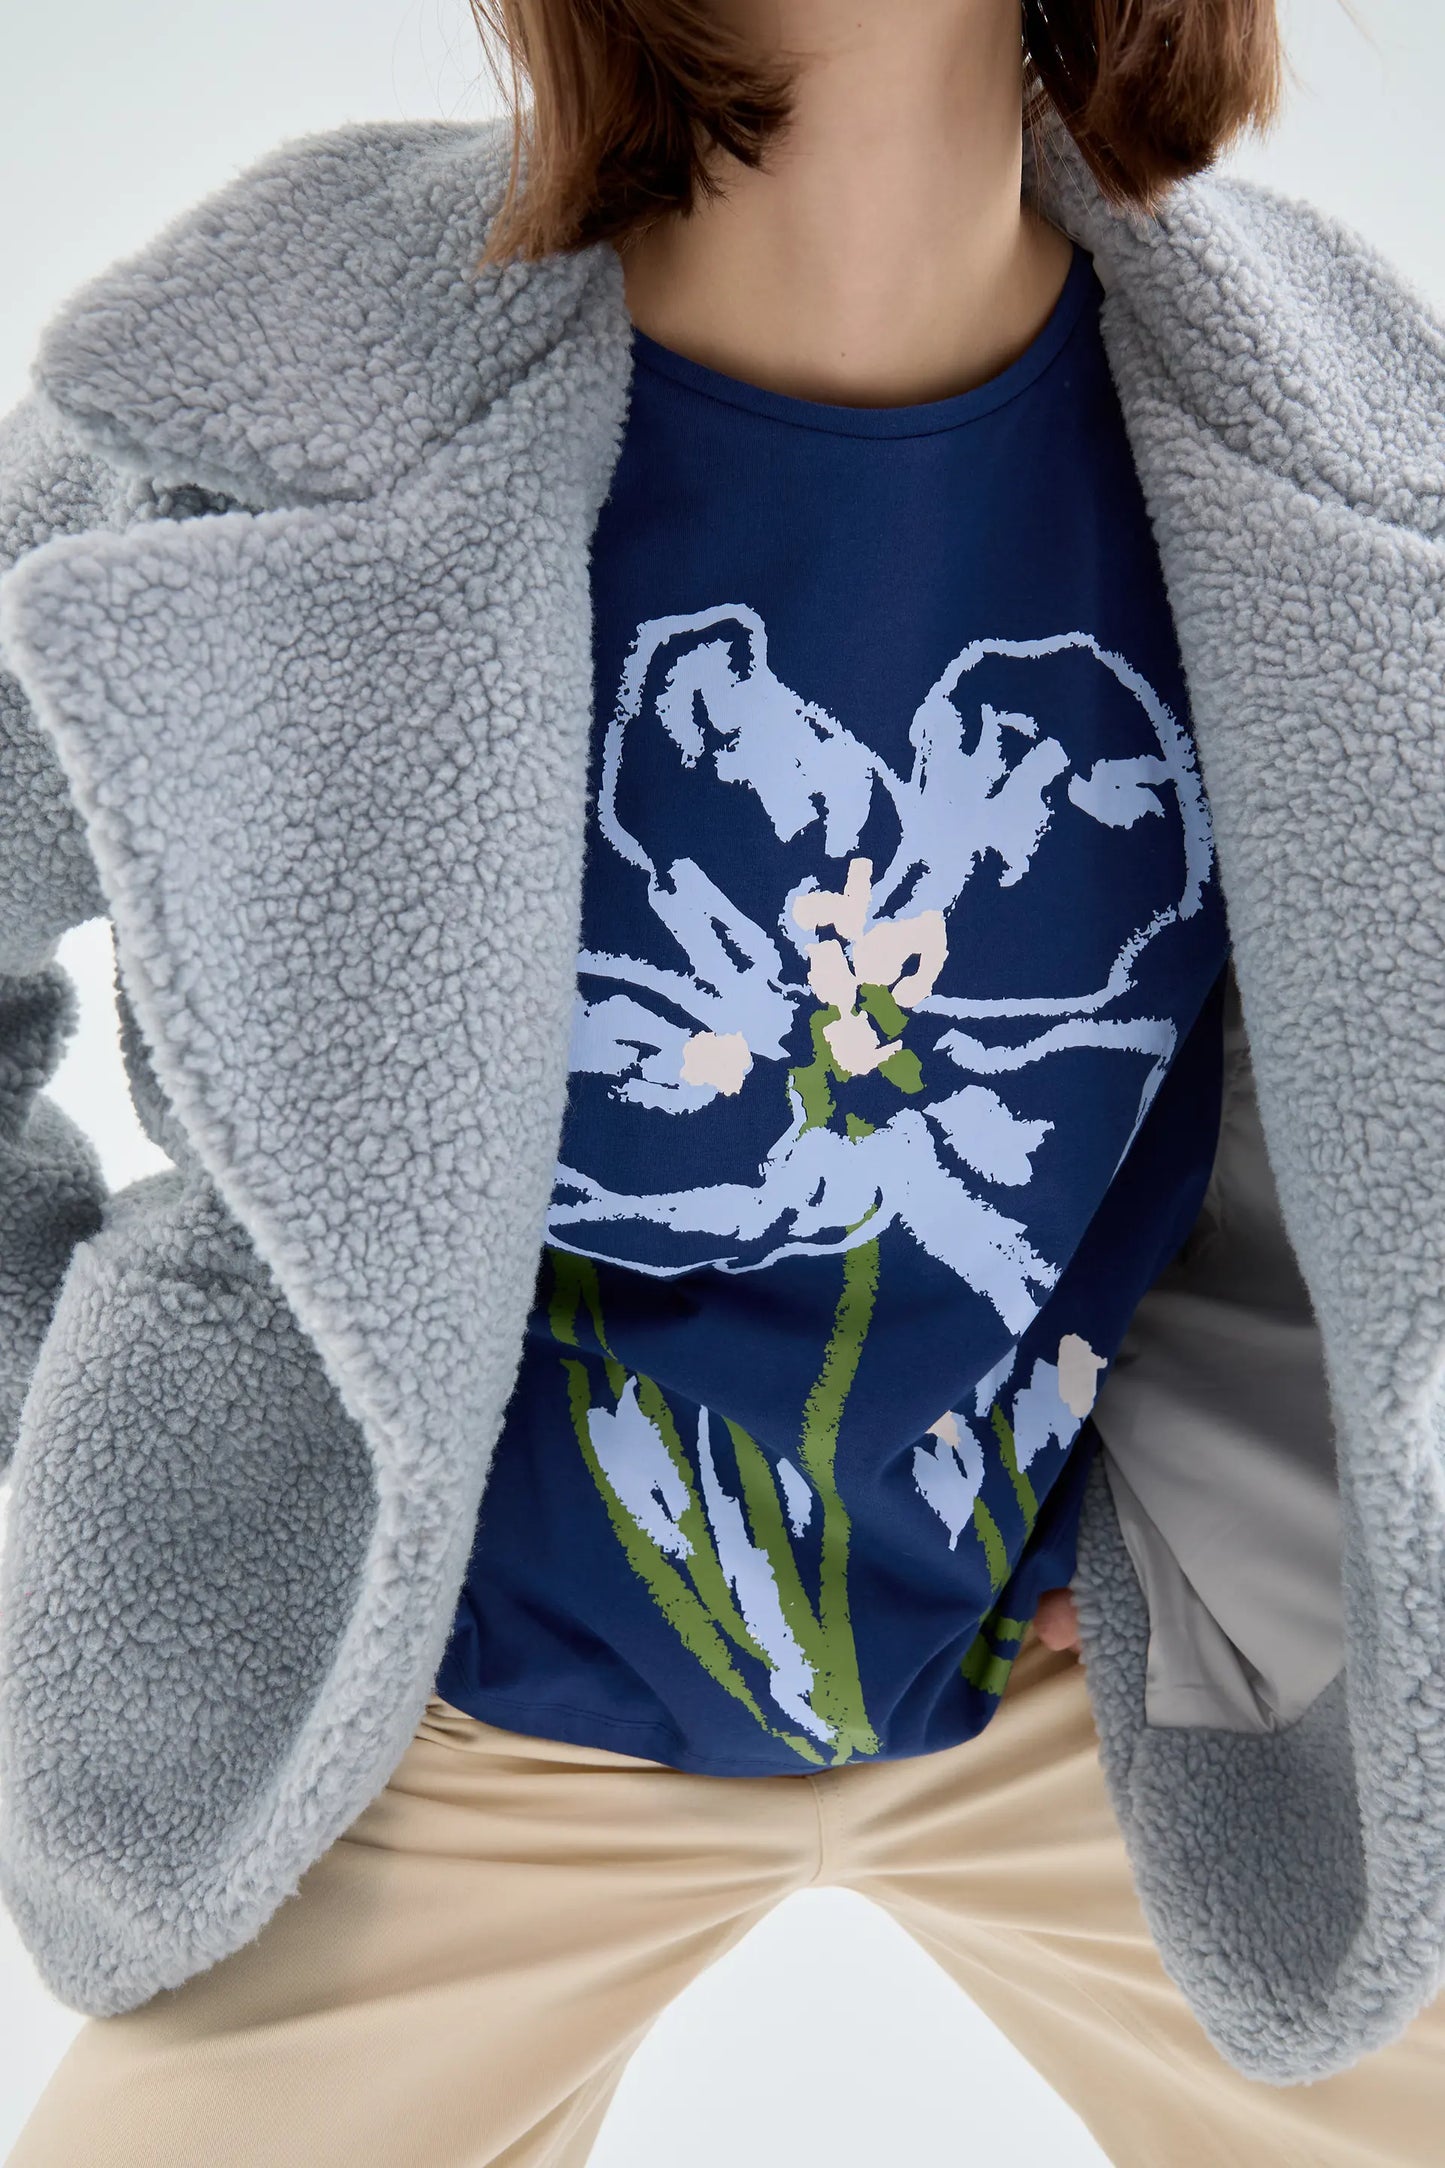 Camiseta de algodón con gráfica floral